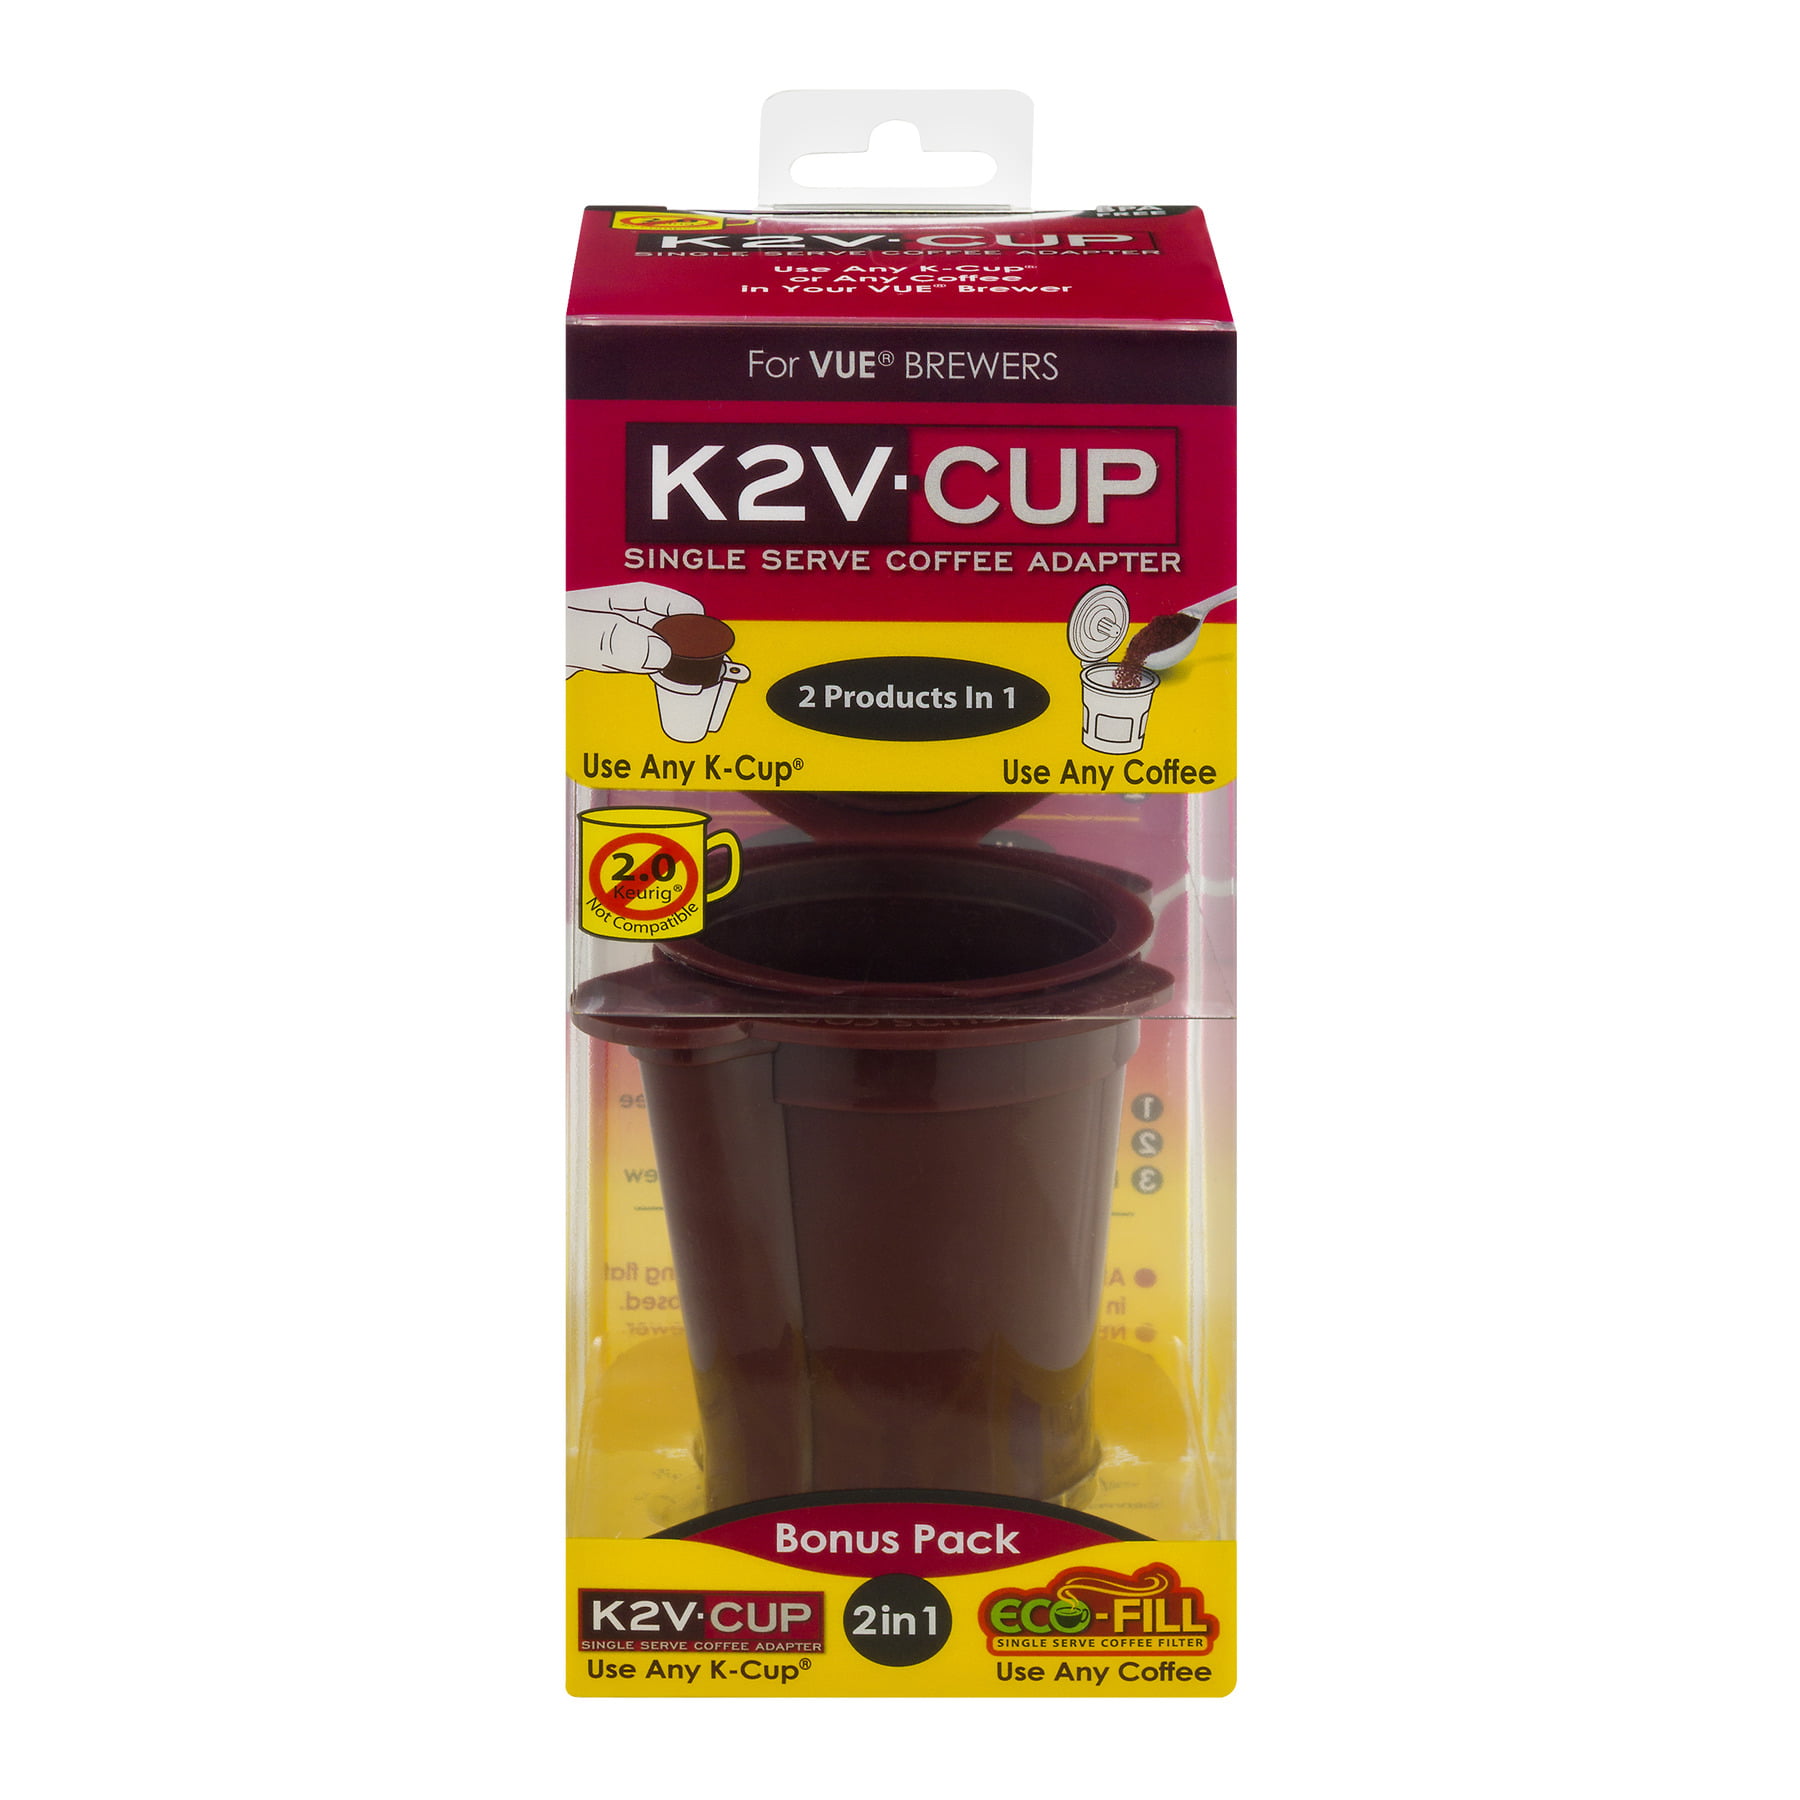 Адаптер для k-Cup. K2brewer воронка. 400gr v Cups. Vue Cup portion Packs. V cup